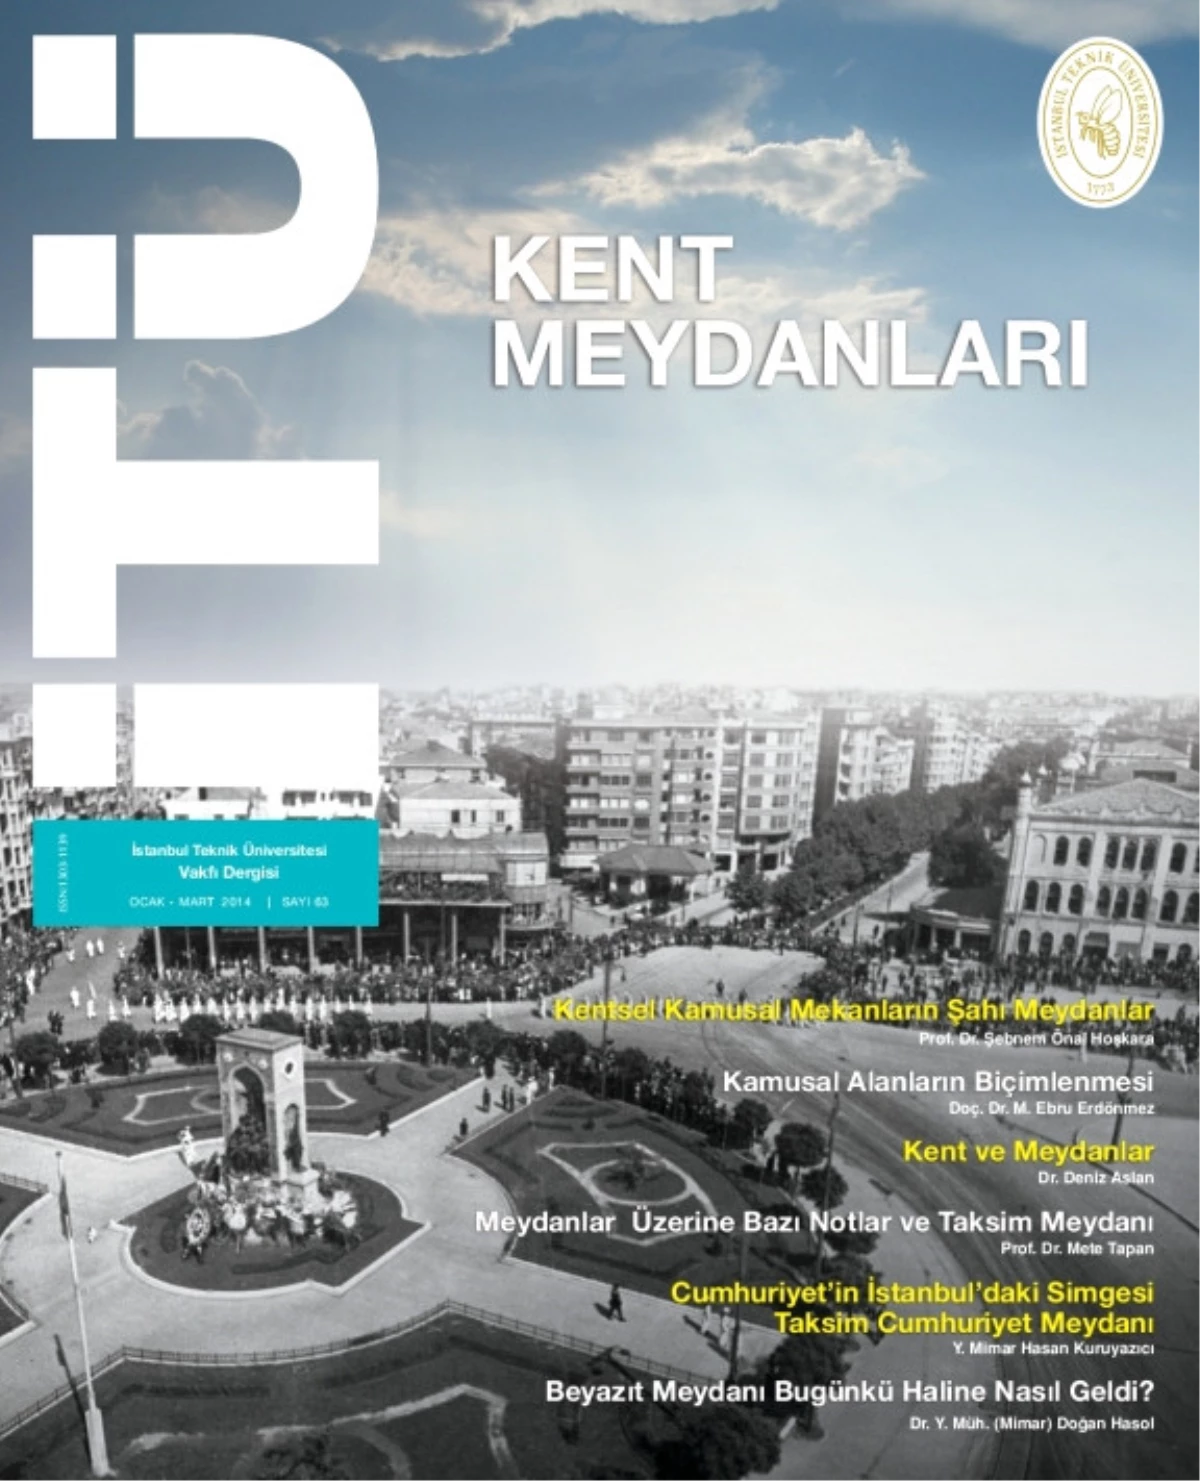 İTÜ Vakfı Dergisi "Kent Meydanlarını" Gündeme Taşıdı